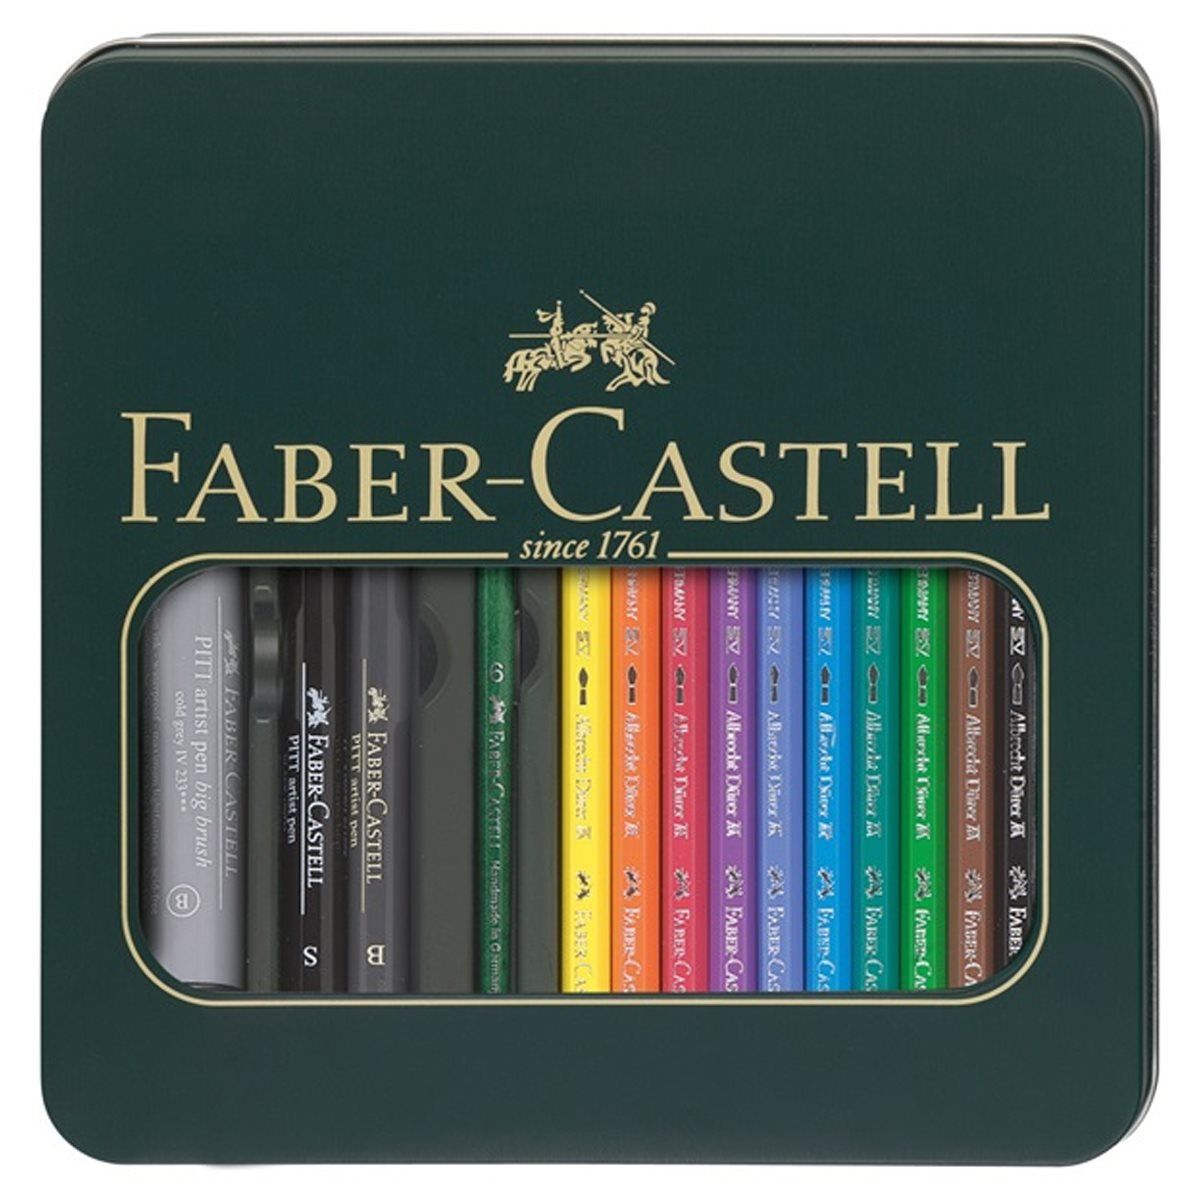 Faber Castell Mixed Media Set : Includes Albrecht Durer Pencils/Pitt Artist Pens